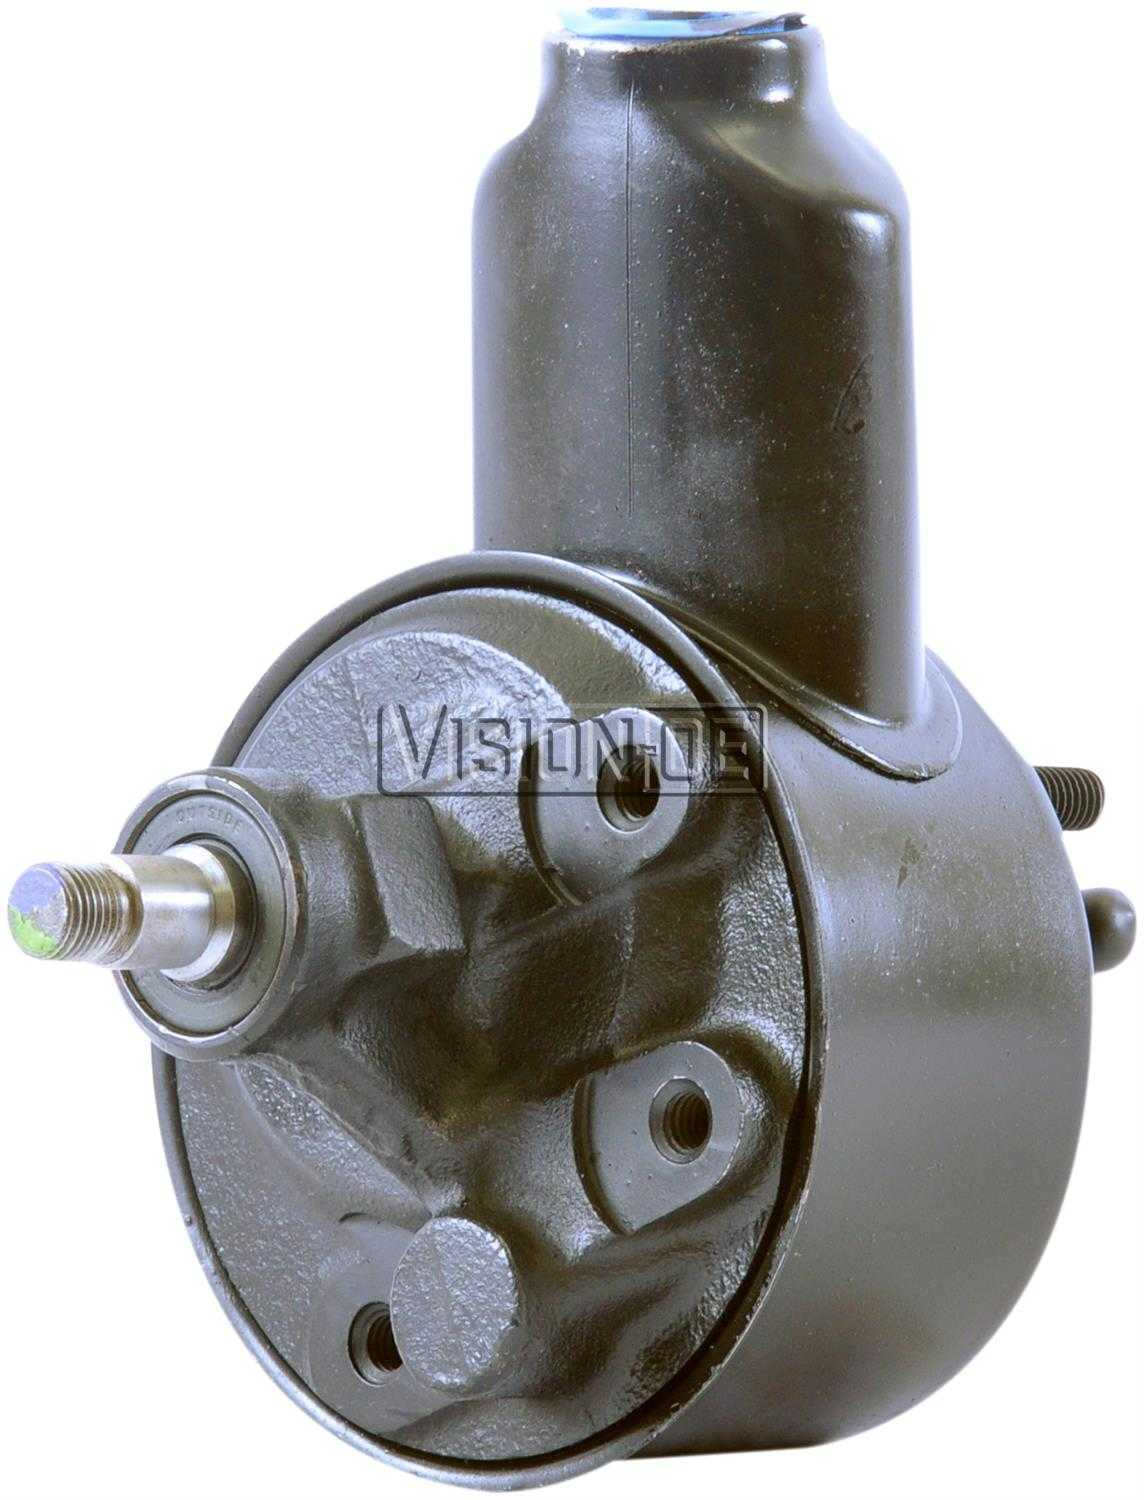 VISION-OE - Reman Power Steering Pump - VOE 732-2112